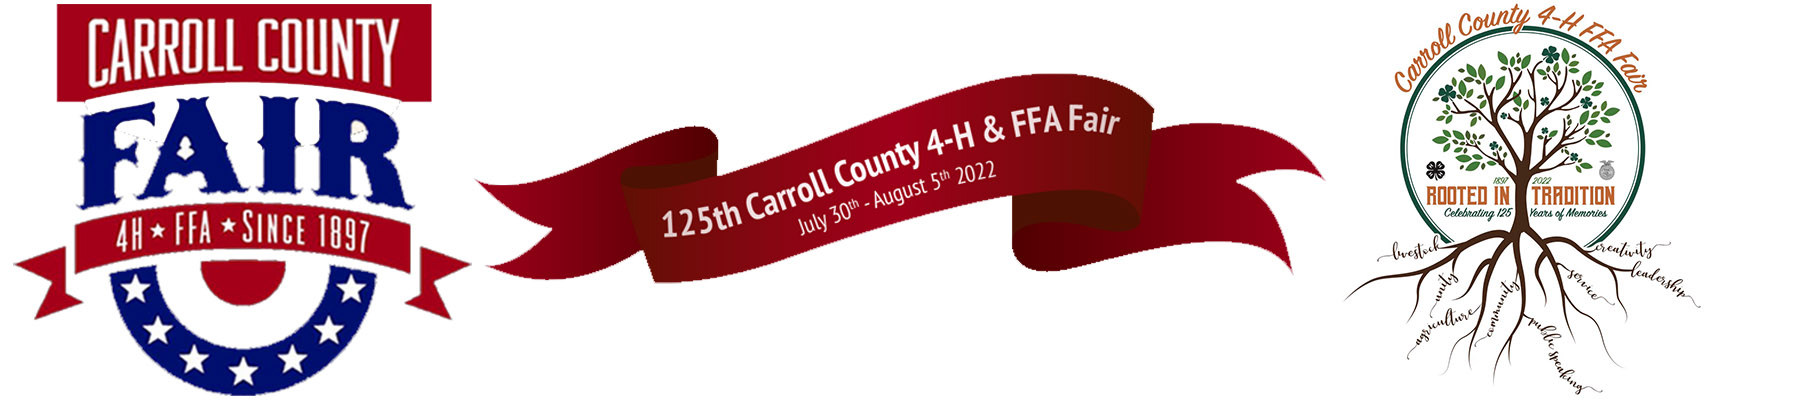 Carroll County 4-H & FFA Fair Tractor Parade